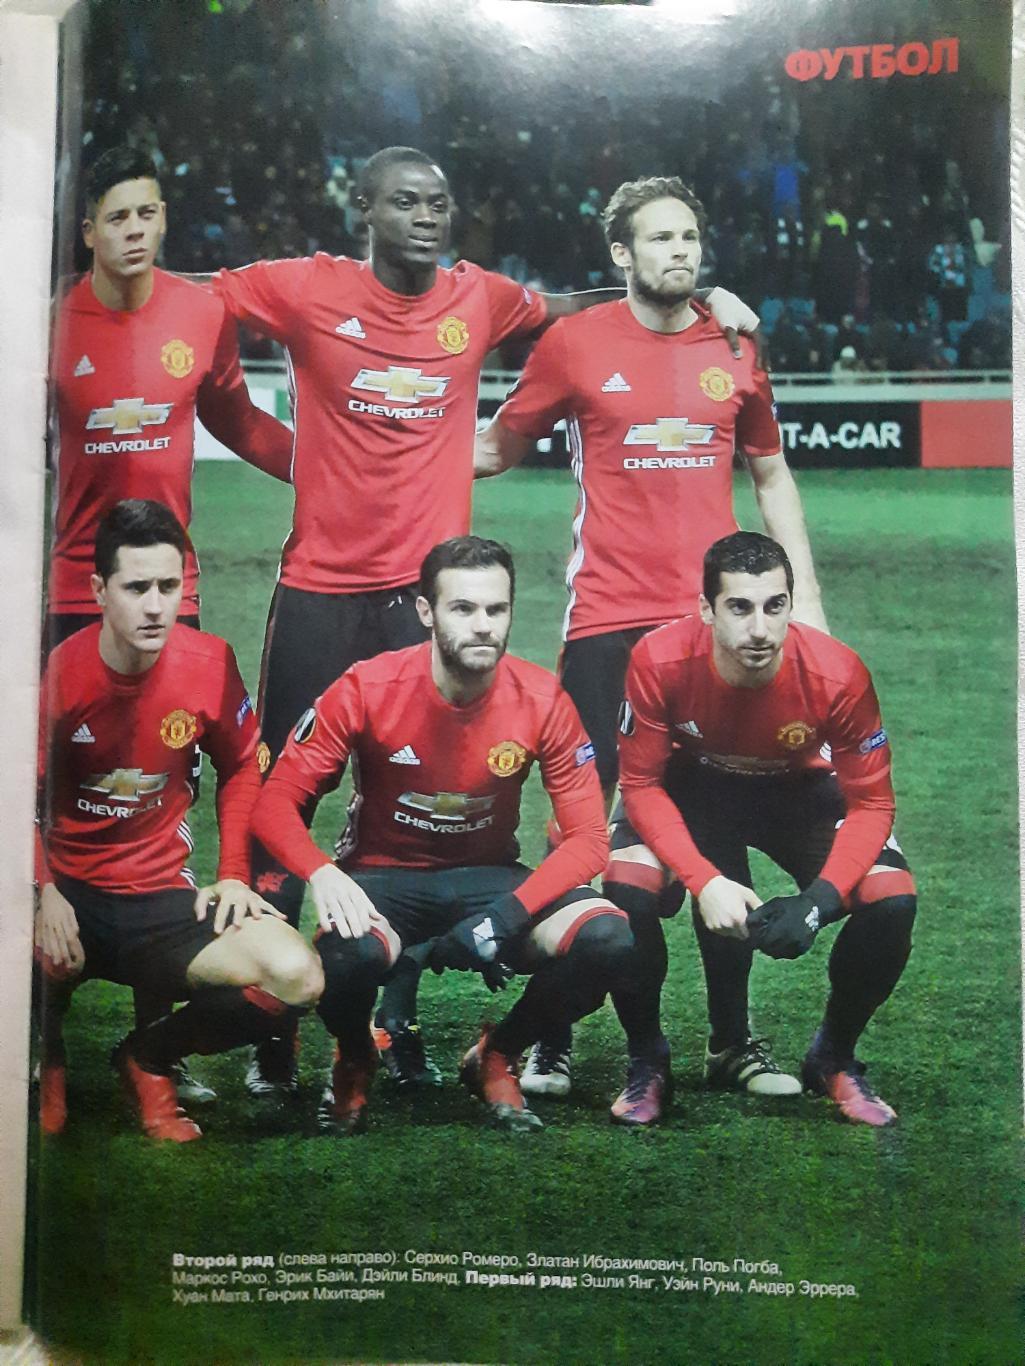 еженедельник Футбол #97 2016, постеры: Манчестер Юнайтед, Погба и Ибрагимович... 2